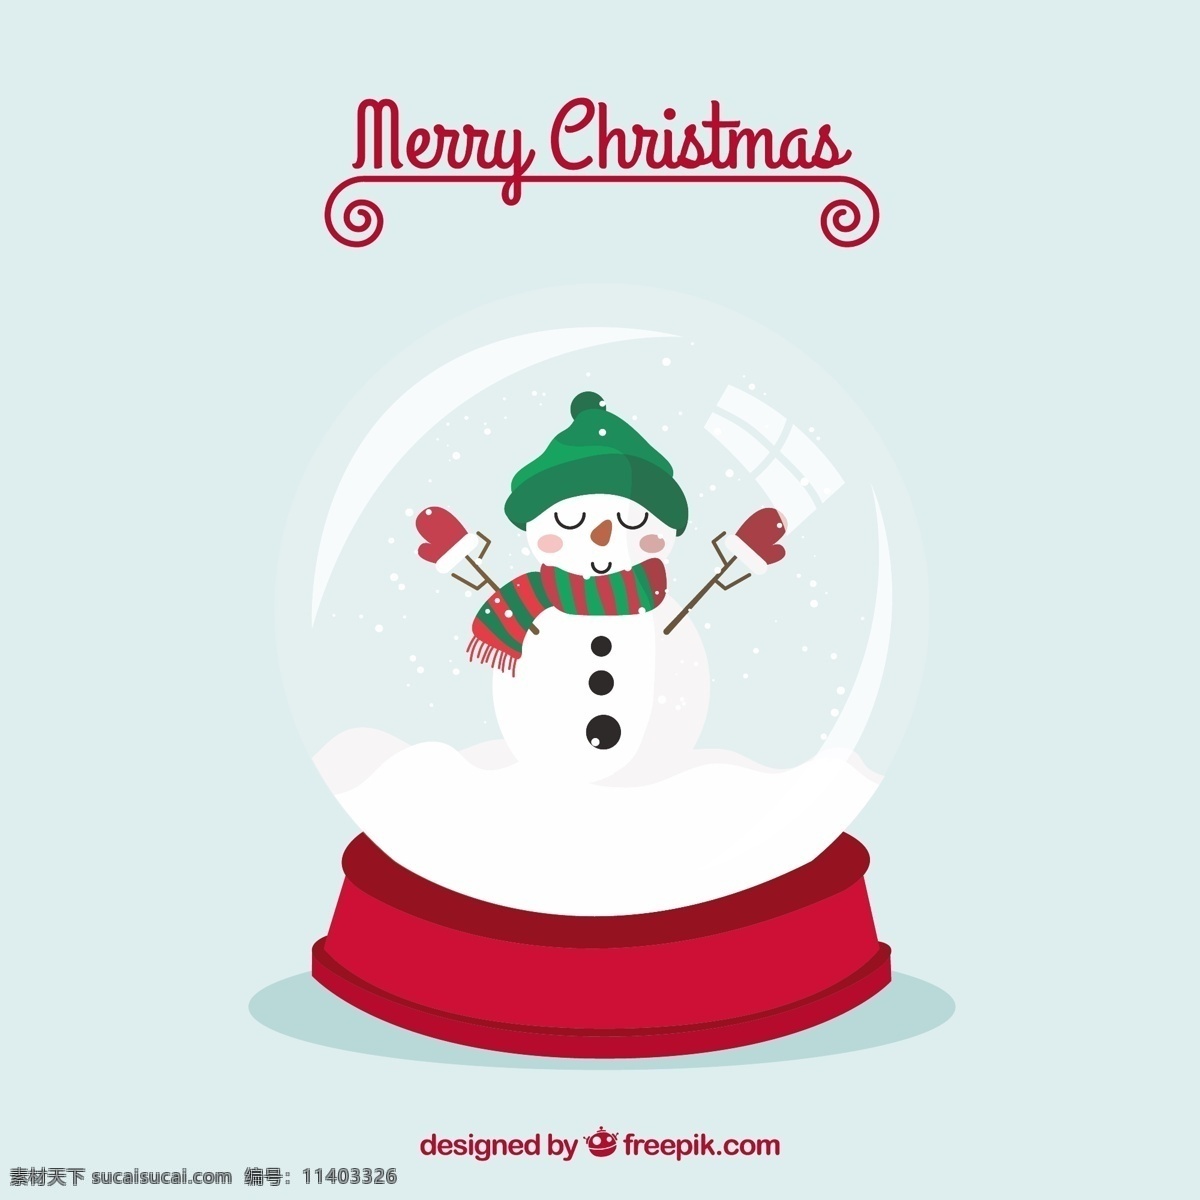 可爱 雪人 圣诞 水晶球 圣诞节 雪 圣诞快乐 冬天快乐 庆祝的节日 堆雪人 球 节日快乐 水晶 圣诞球 季节 节日 快乐 十二月 白色